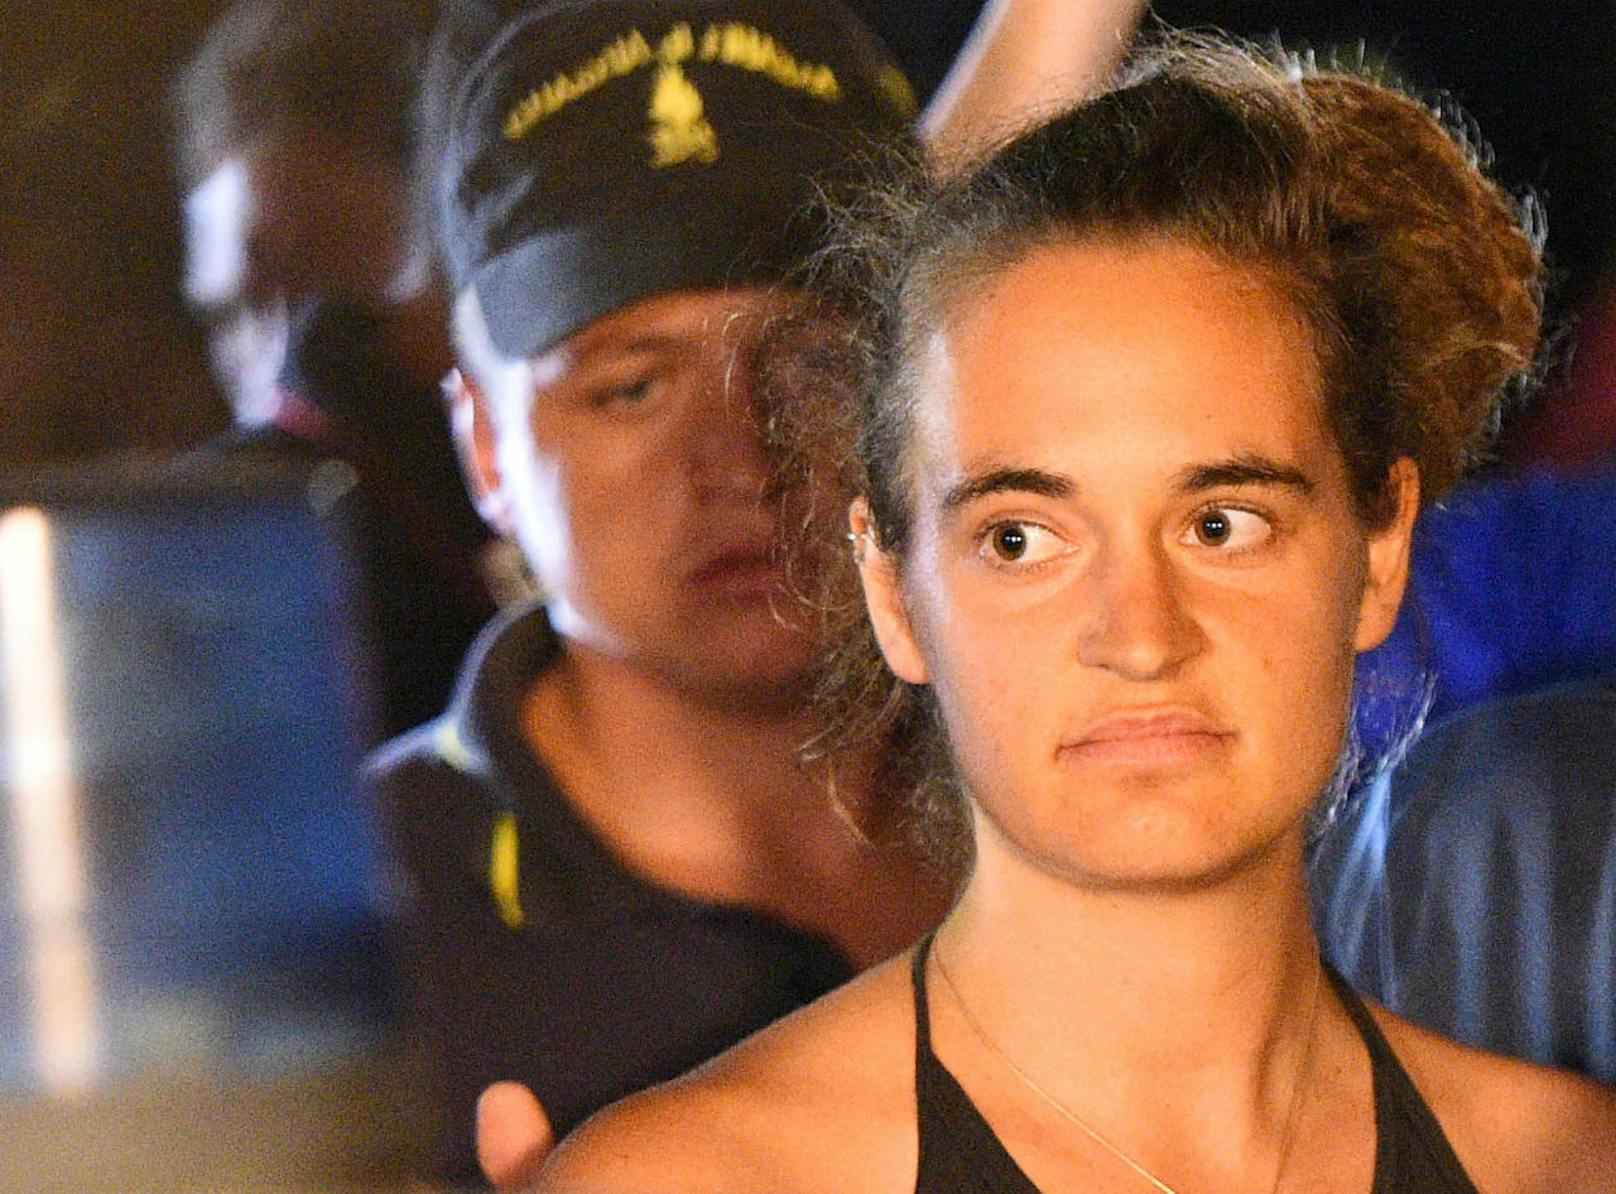 Verbrecherin oder Vorbild? Darüber debattierte die Welt, nachdem Carola Rackete (31) 53 aus Libyen kommende Flüchtlinge als Kapitänin der "Sea-Watch 3" im Mittelmeer aus Seenot rettete - und sie nach Wochen des Wartens Ende Juni trotz eines Verbots der Behörden in den Hafen der Insel Lampedusa brachte.